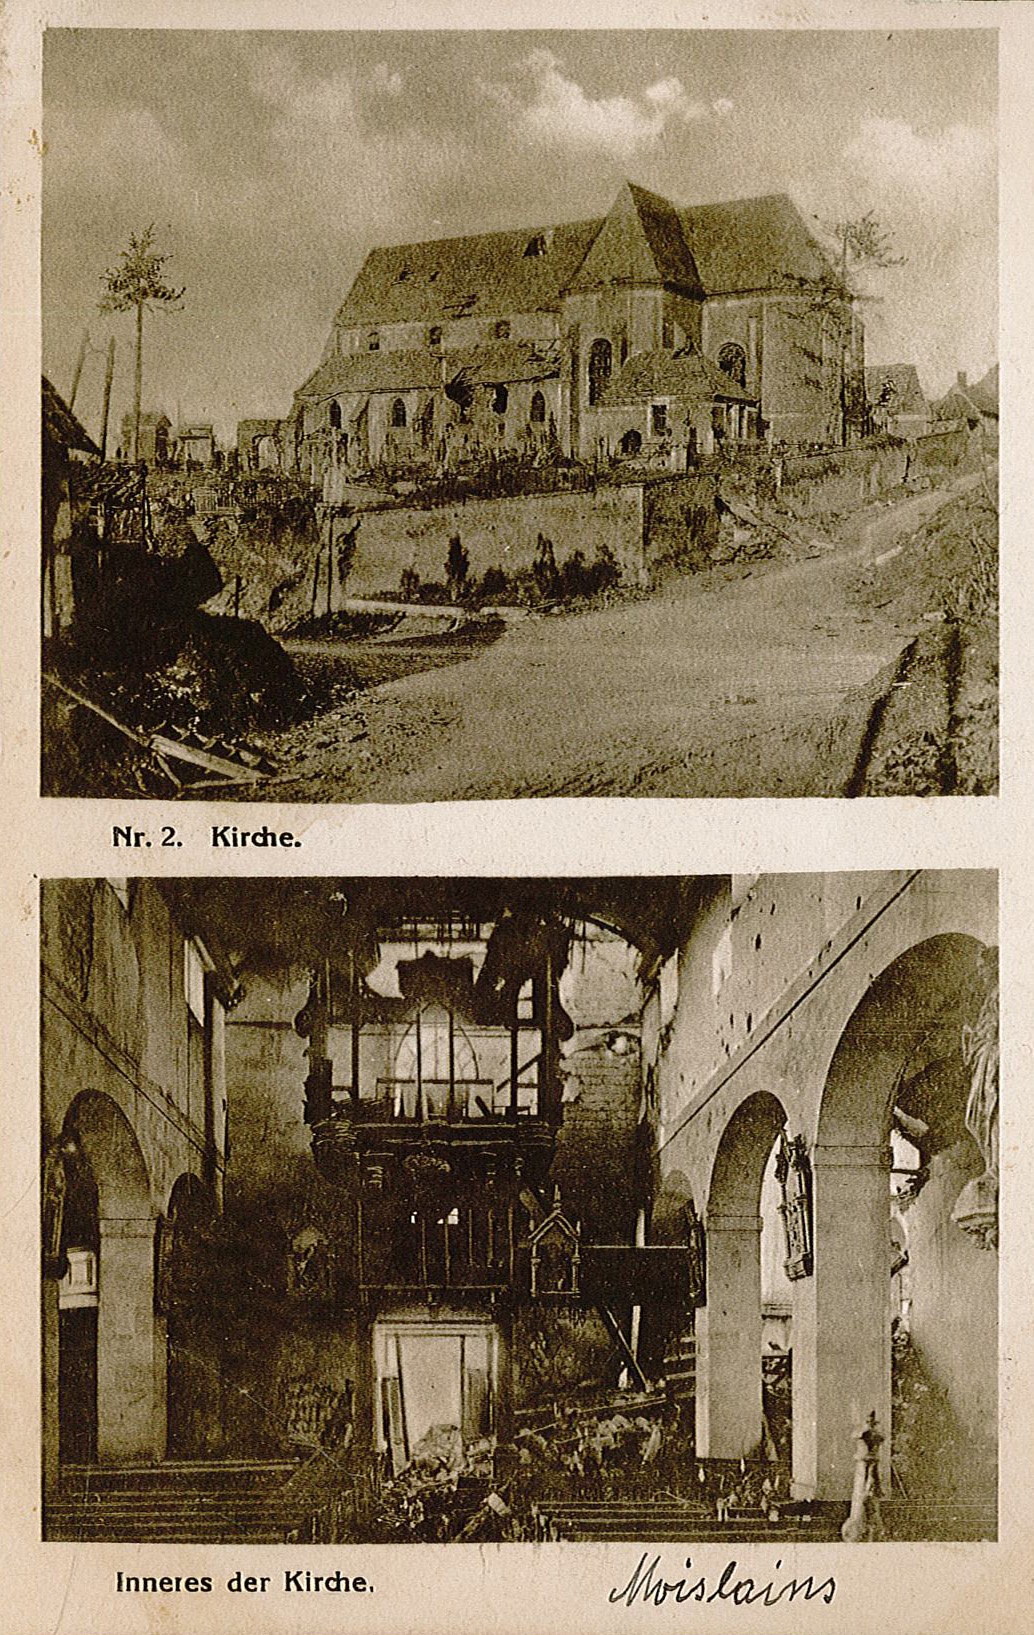 Feldpostkarte von Arthur Wunderlich an Ida Wunderlich, 23. Februar 1917 (Museum Wolmirstedt RR-F)